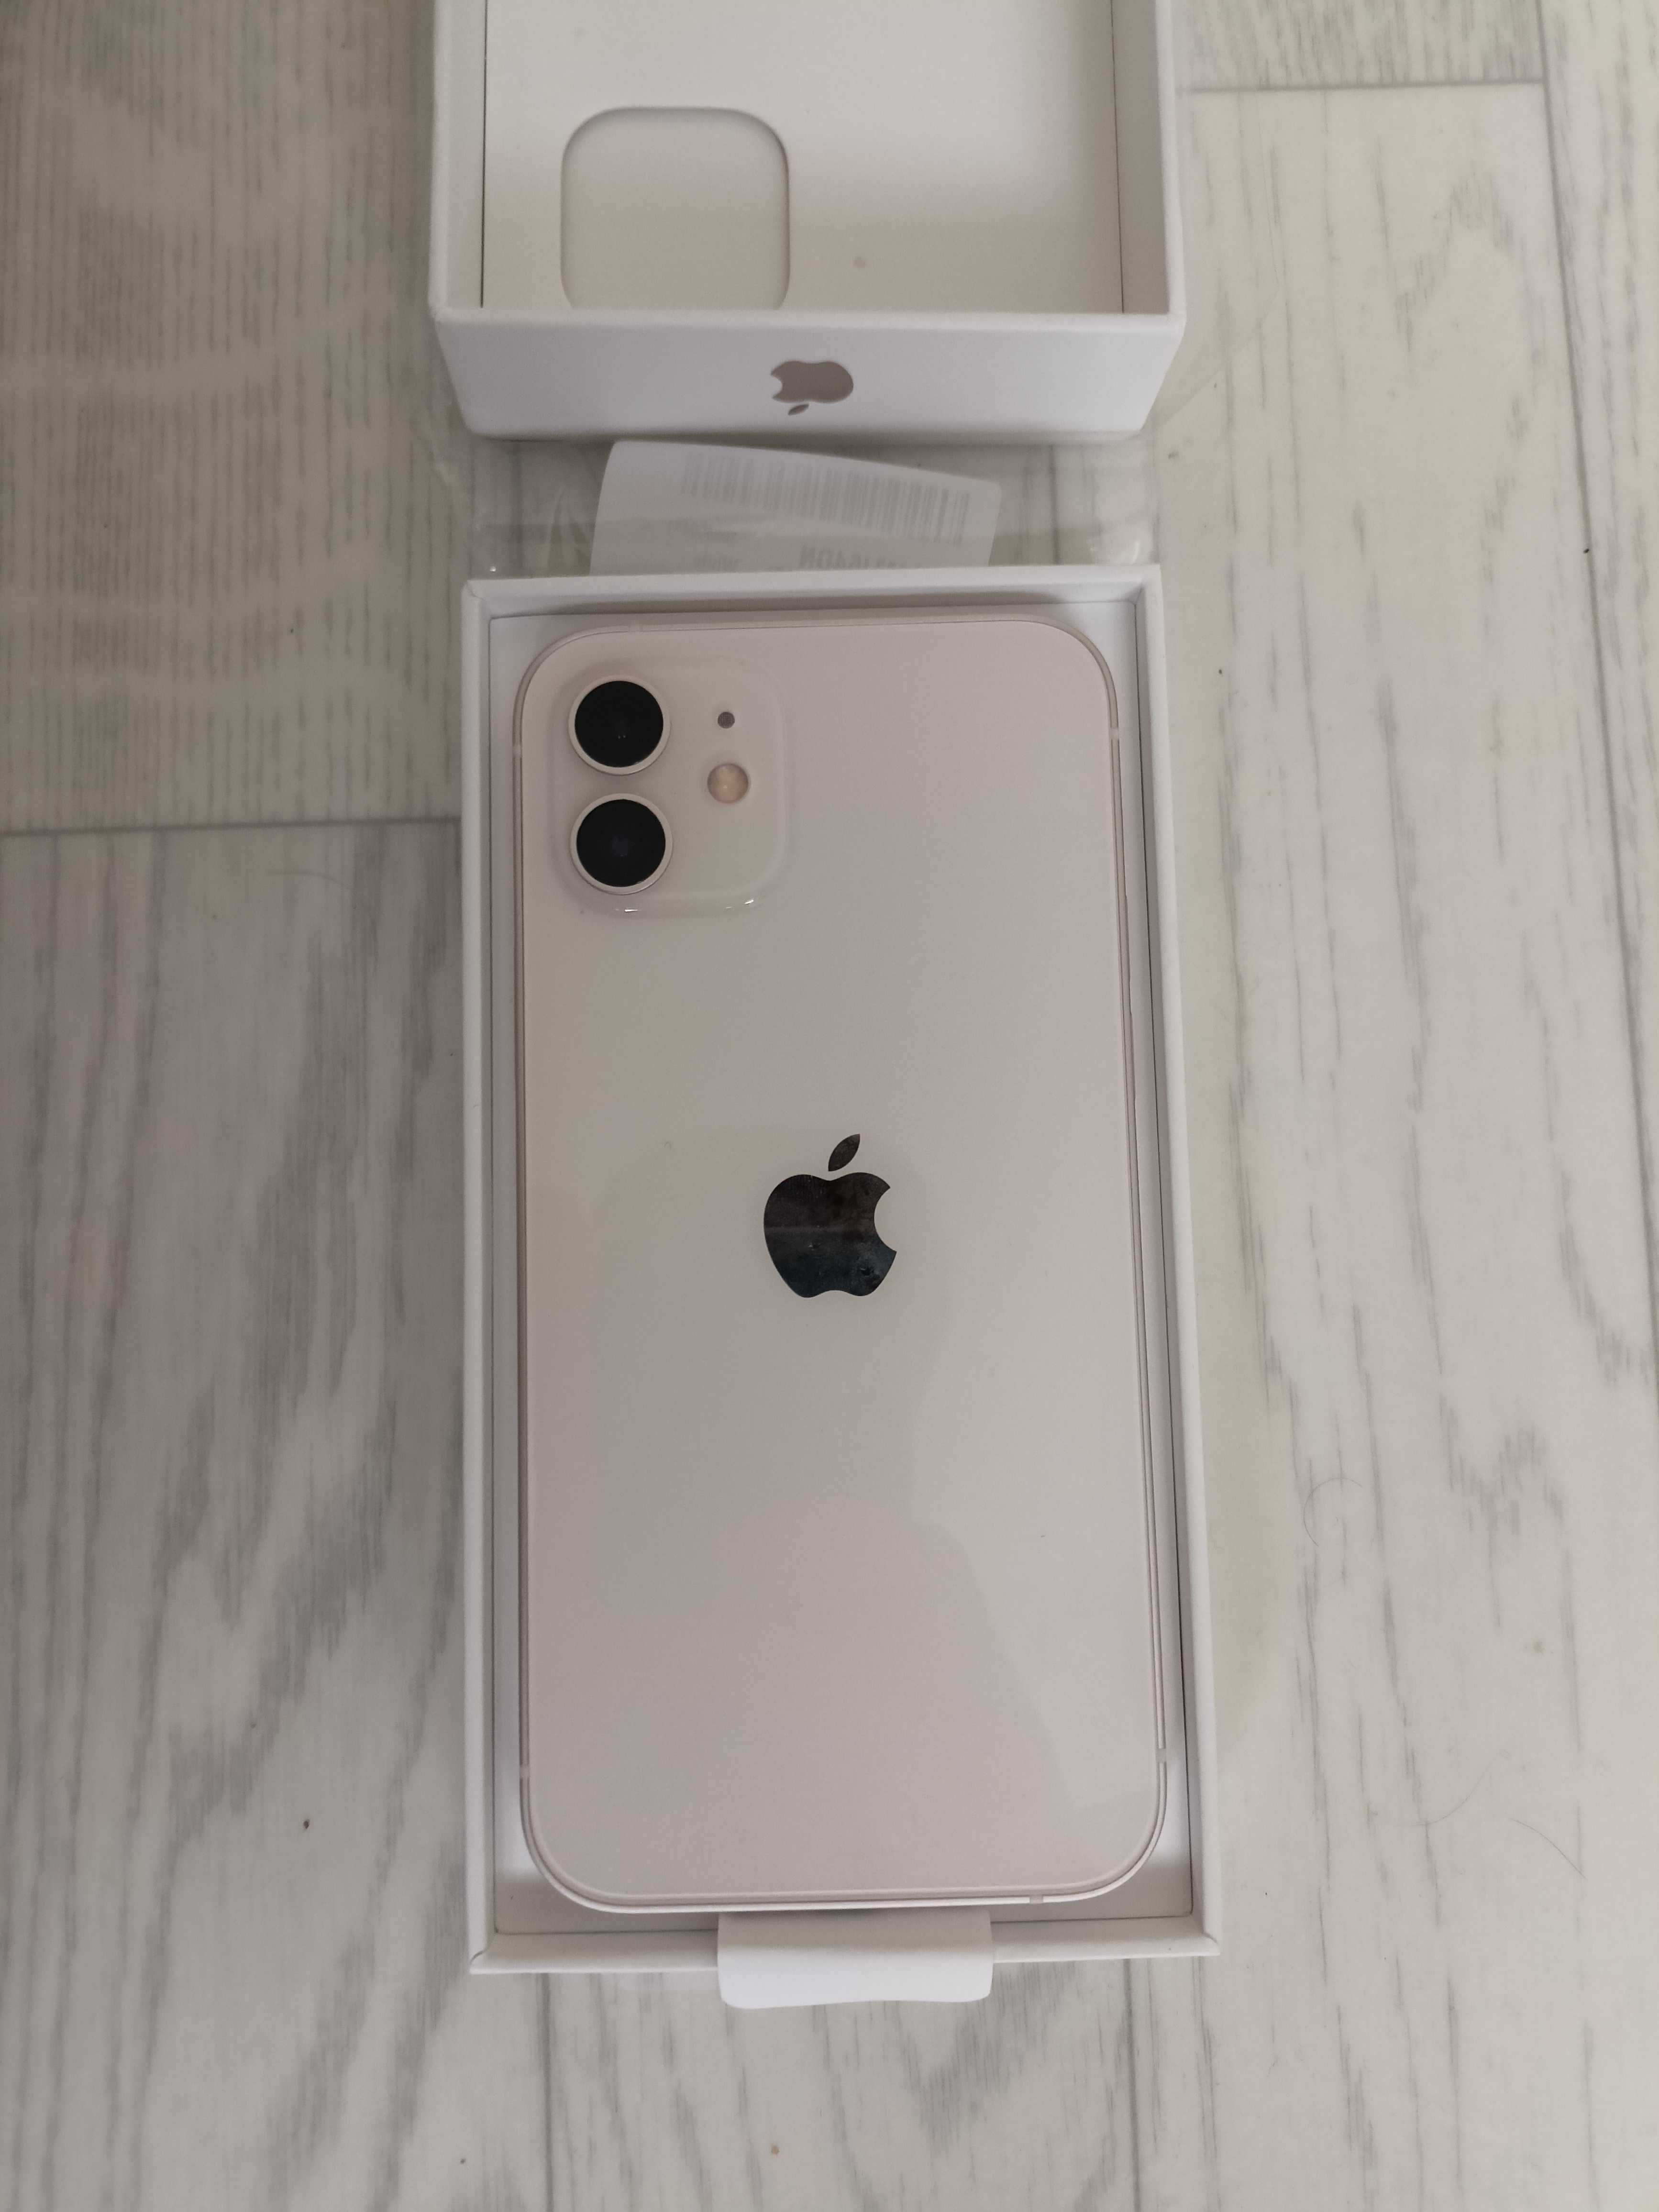 iPhone 12 64gb белый. Батарея 100%. Новый, только вскрыта упаковка